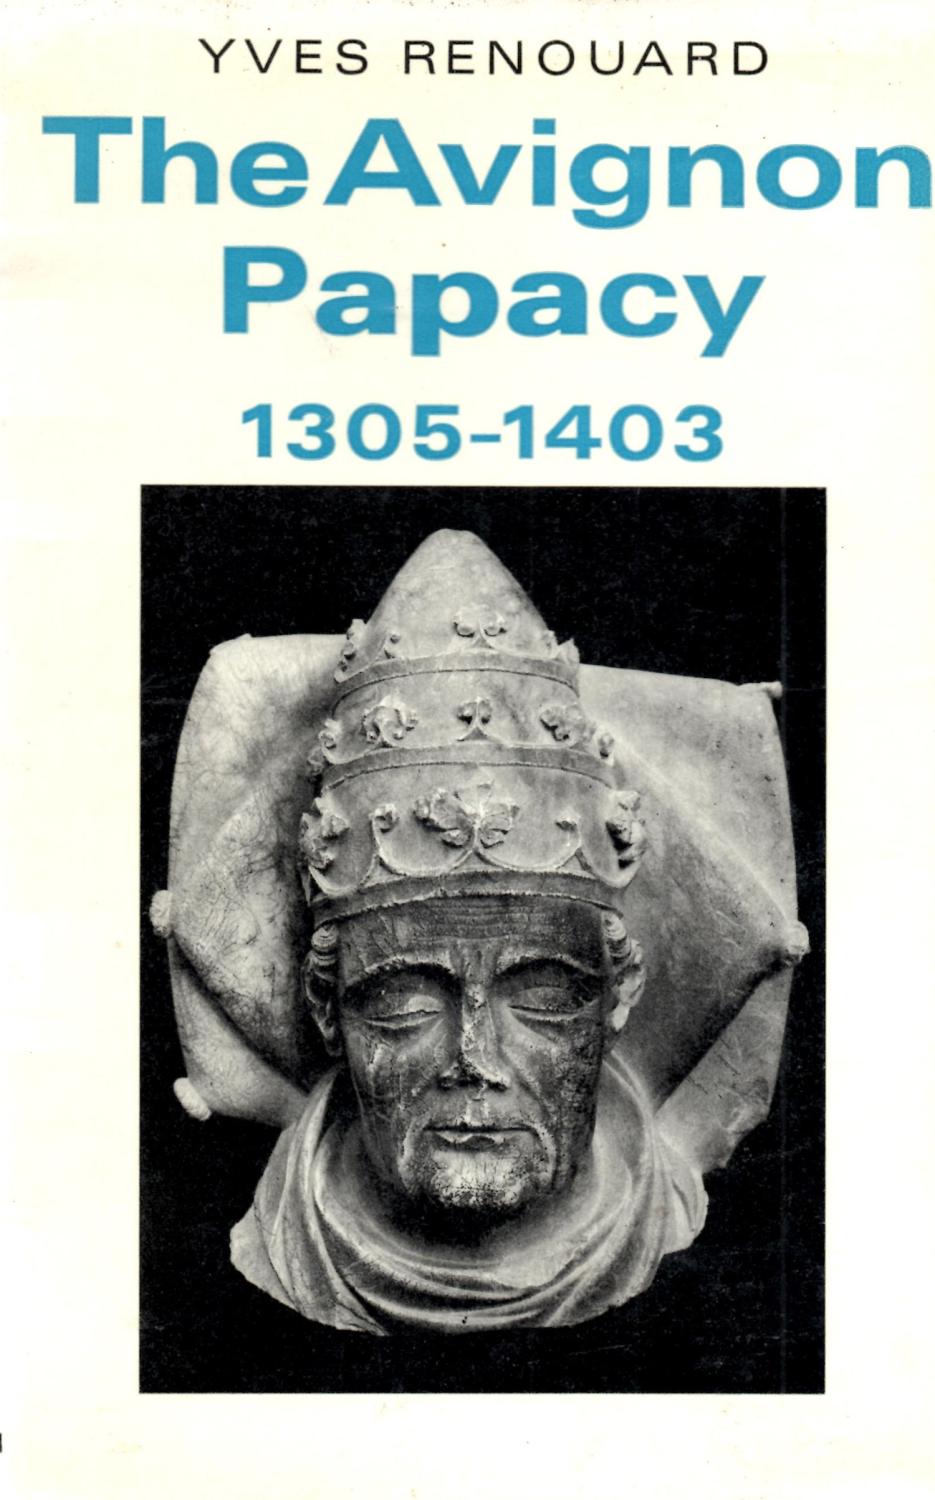 The Avignon Papacy 1305-1403.